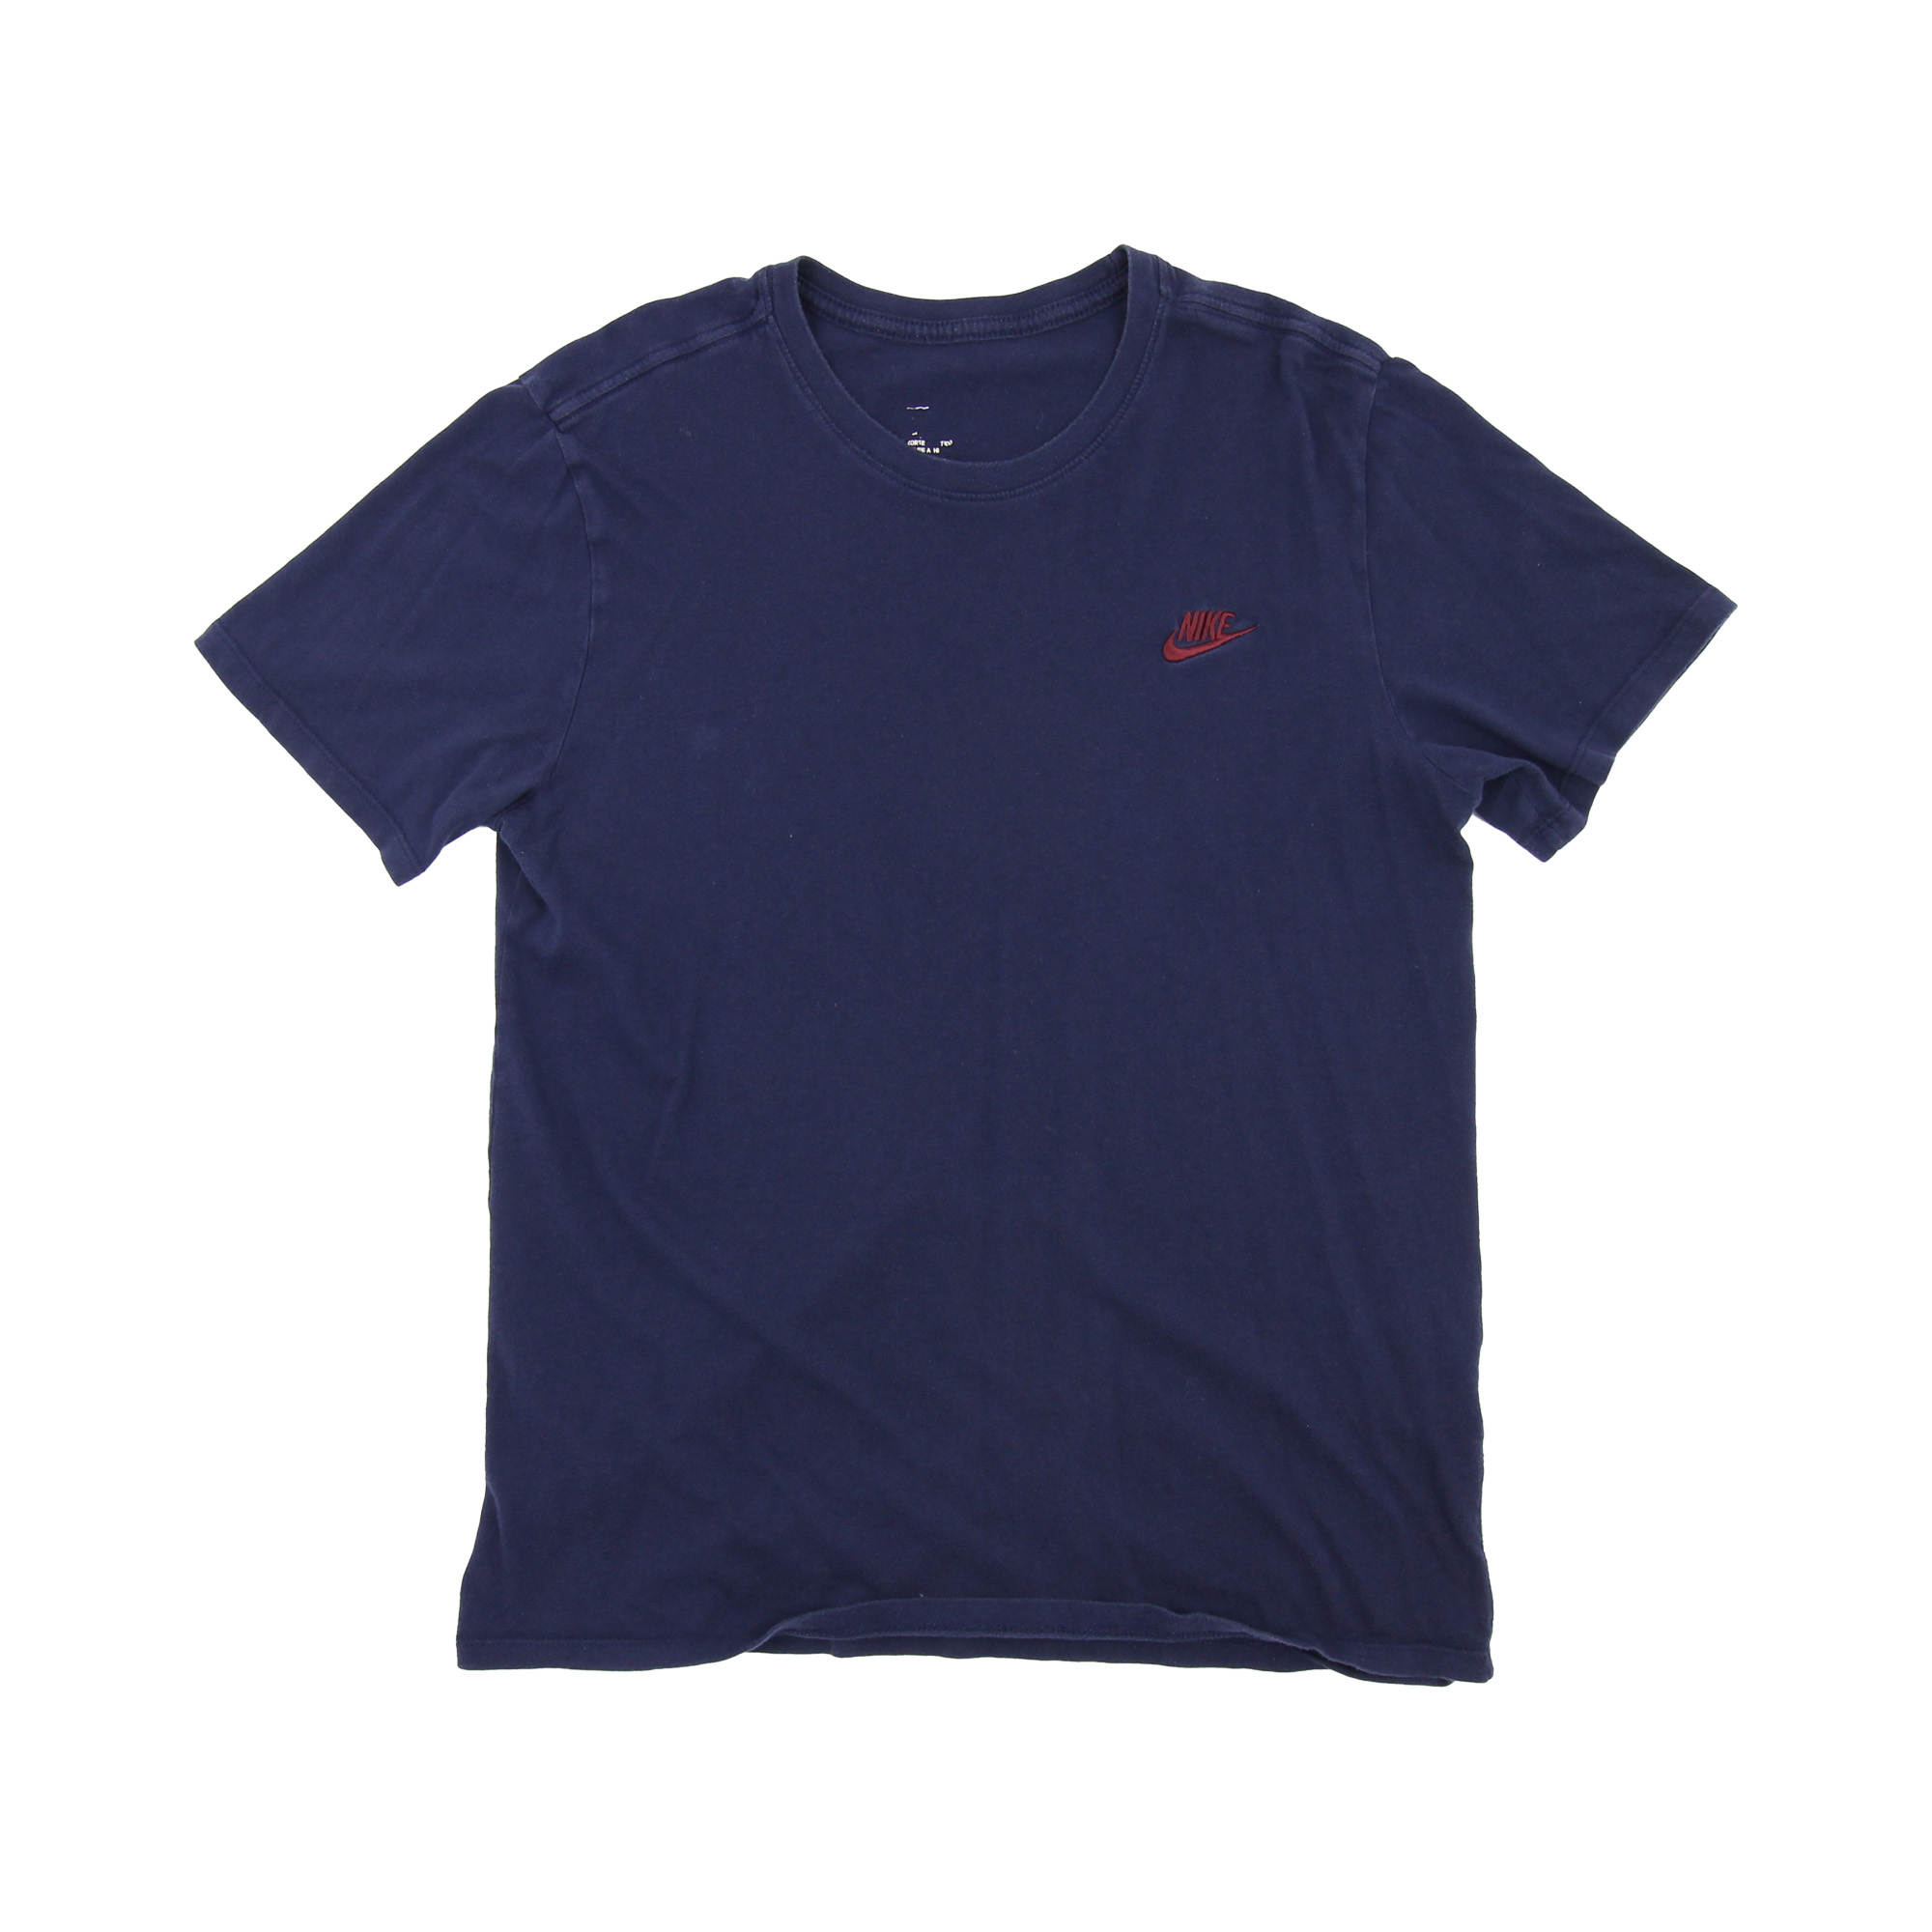 Nike T-Shirt Blue -  L